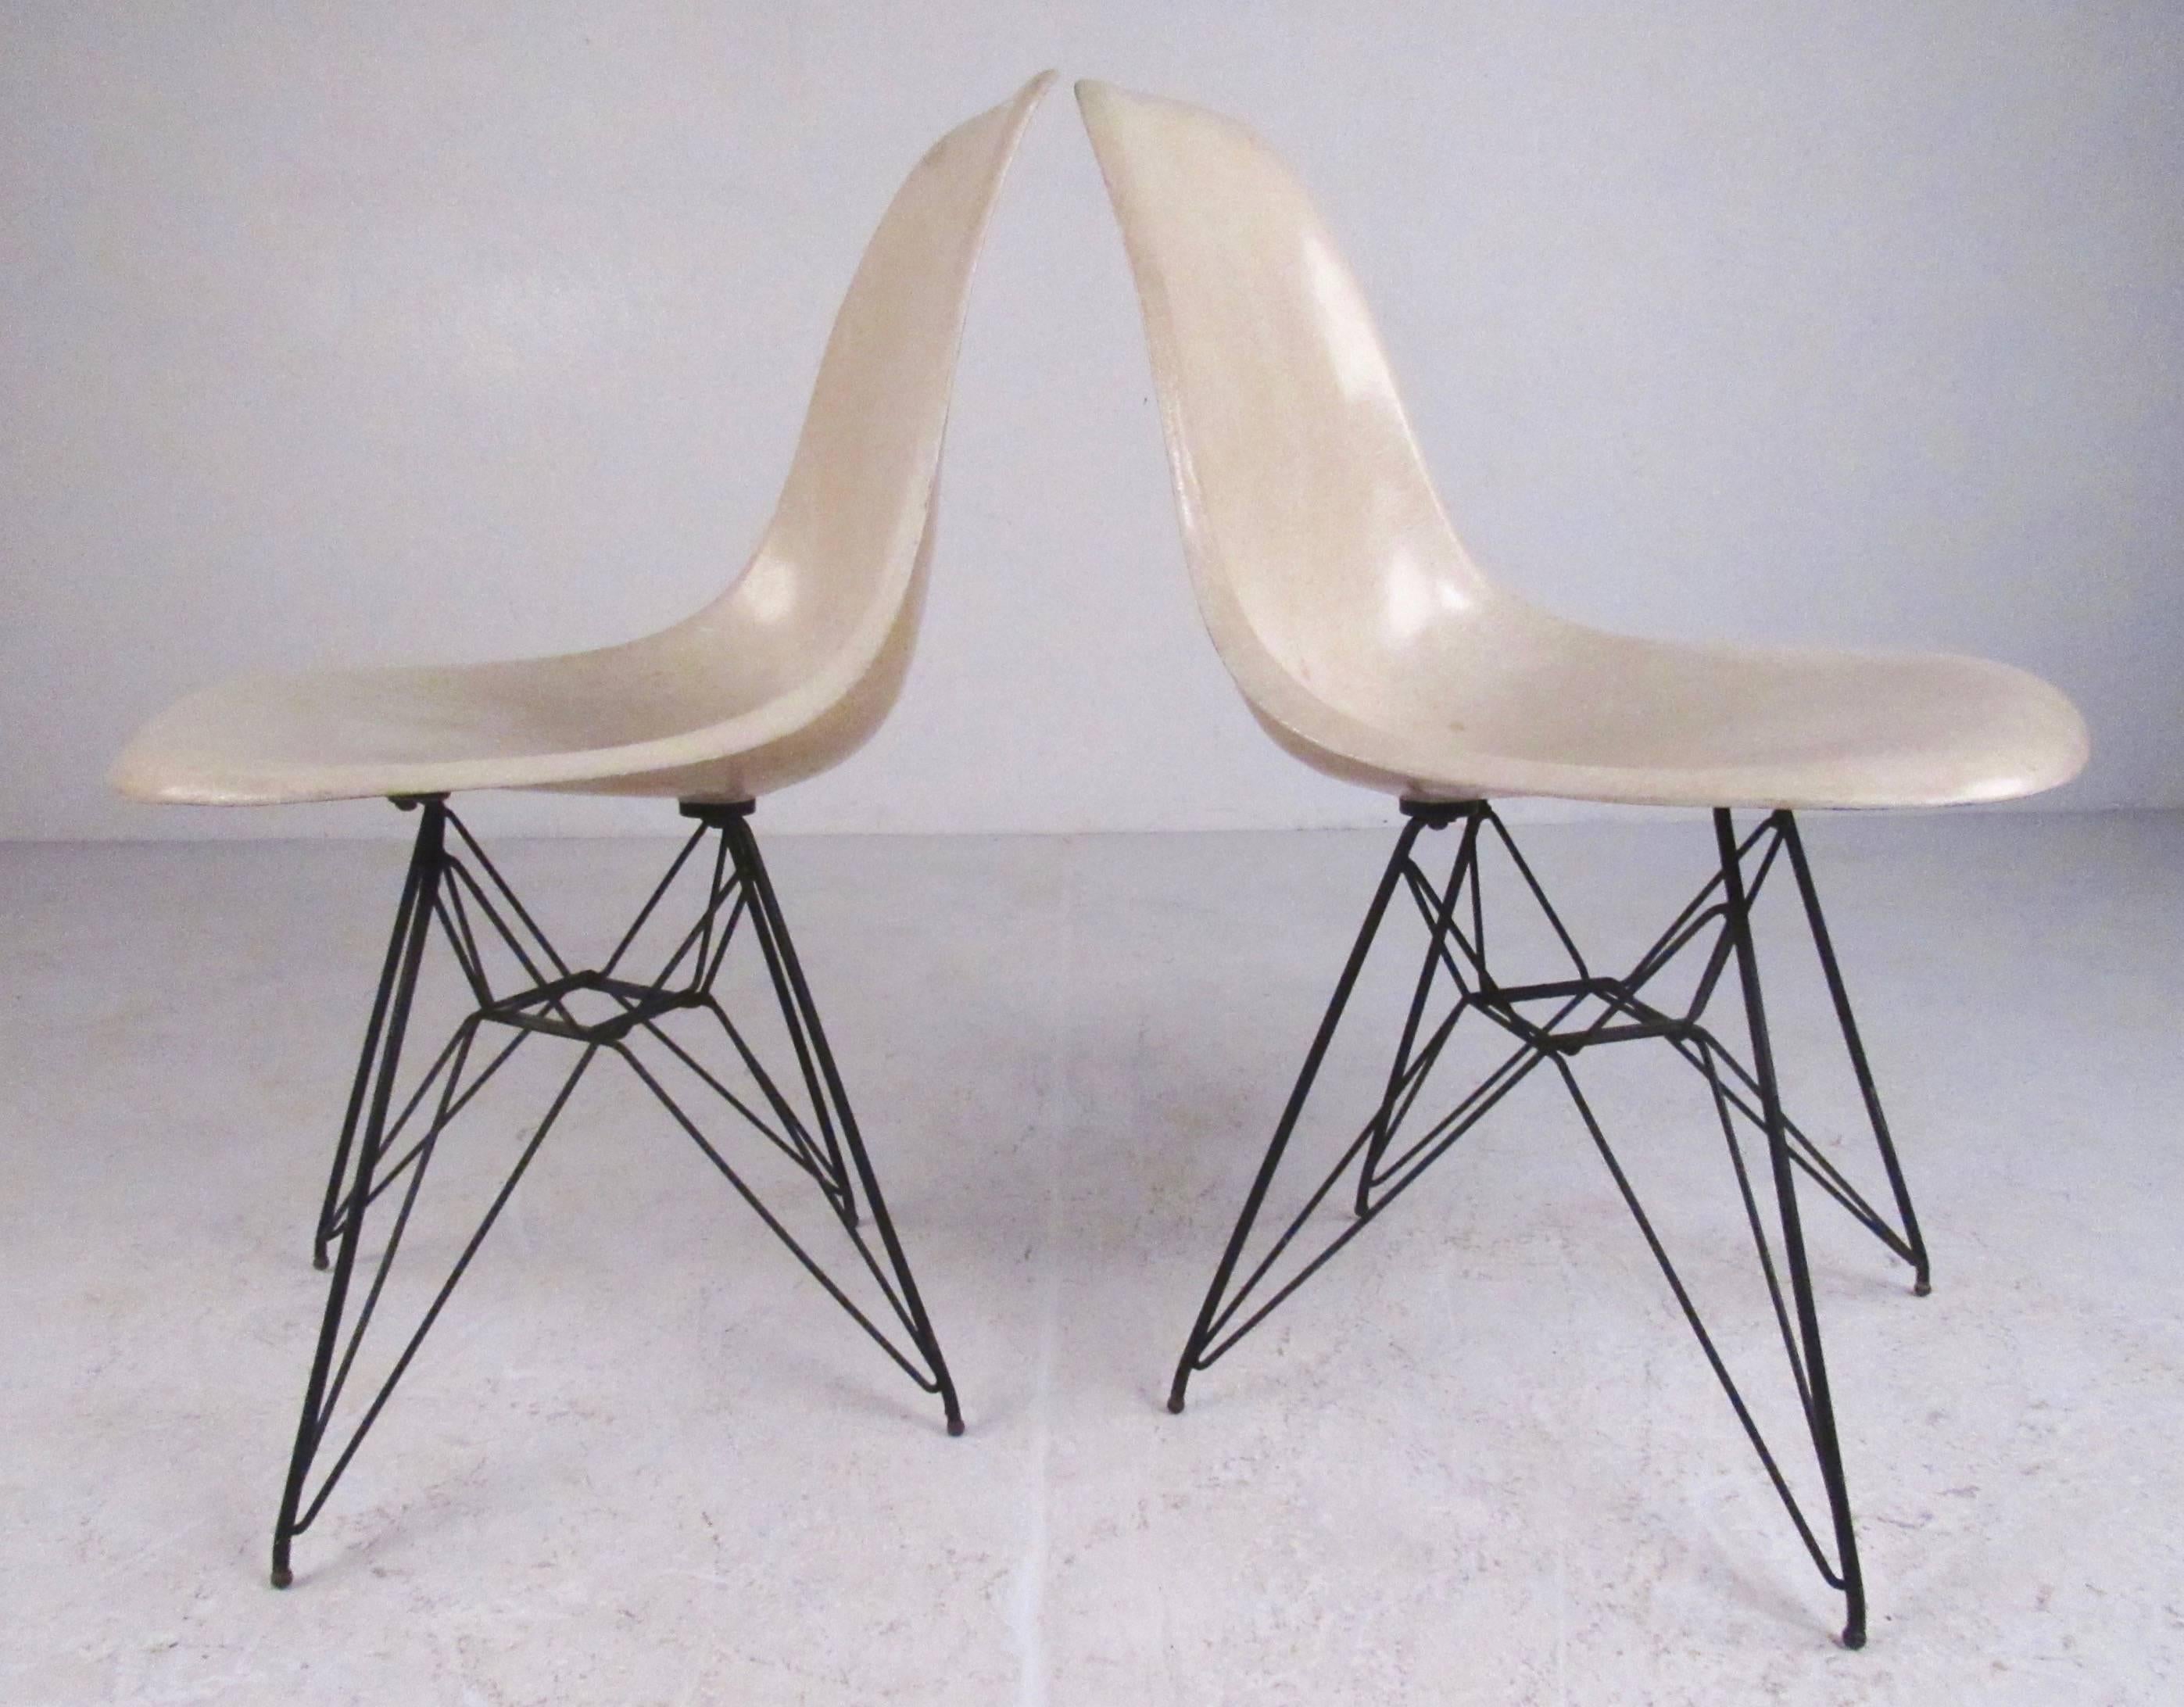 Dieses ikonische Paar moderner Beistellstühle aus der Jahrhundertmitte zeichnet sich durch das klassische Charles-Eames-Eiffelturm-Untergestell und geformte Glasfasersitze aus. Der stilvolle, moderne Vintage-Komfort macht dieses Paar zur perfekten